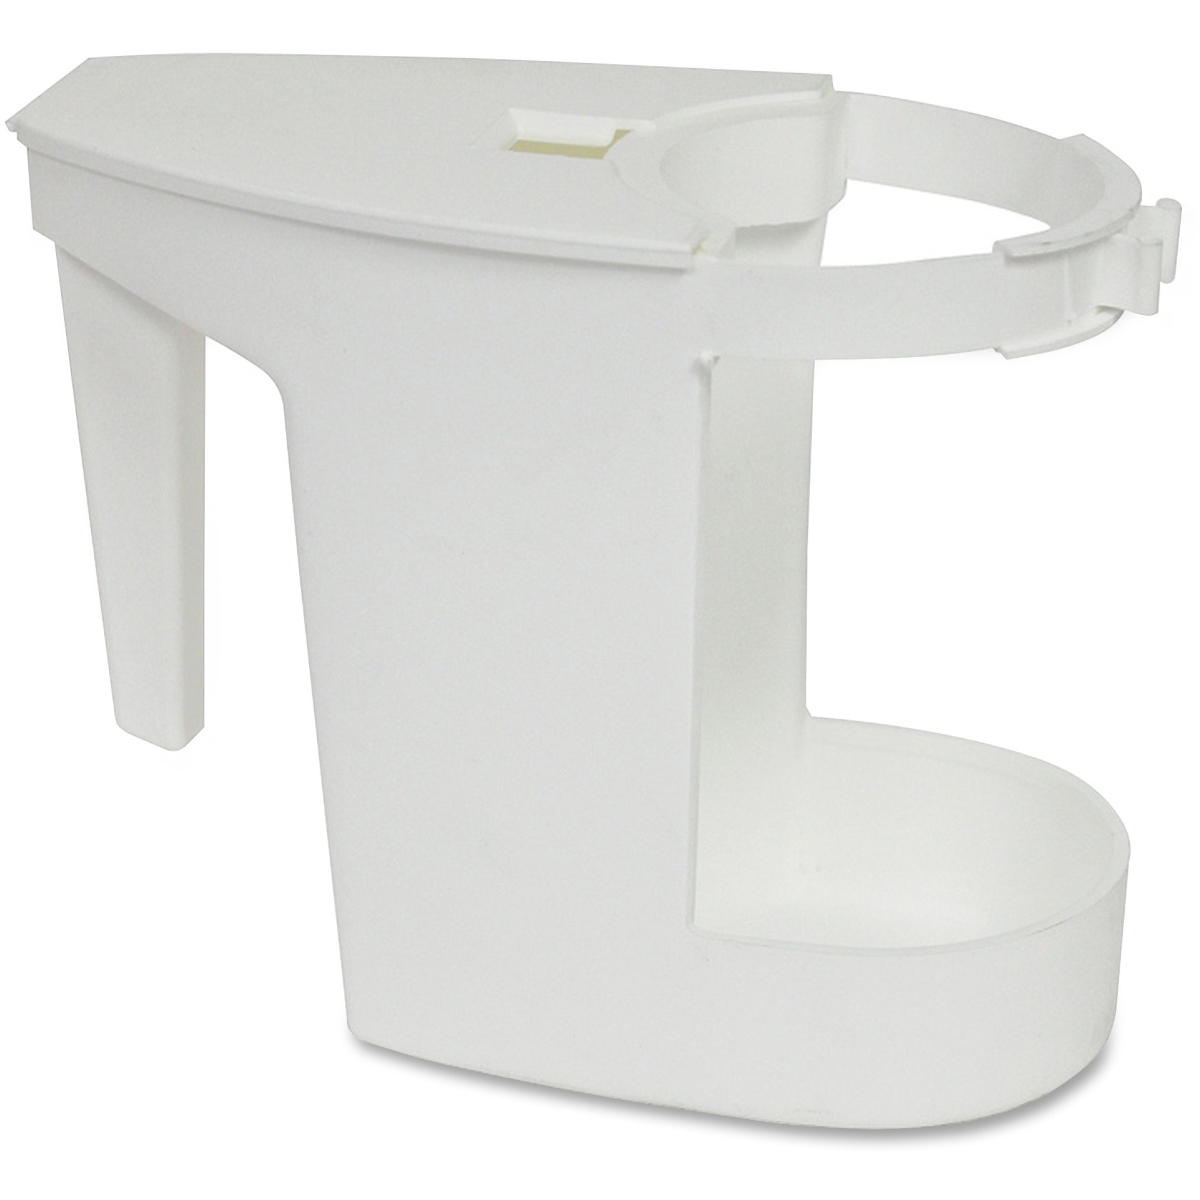 Gjo85121ct Toilet Bowl Mop Caddy - White